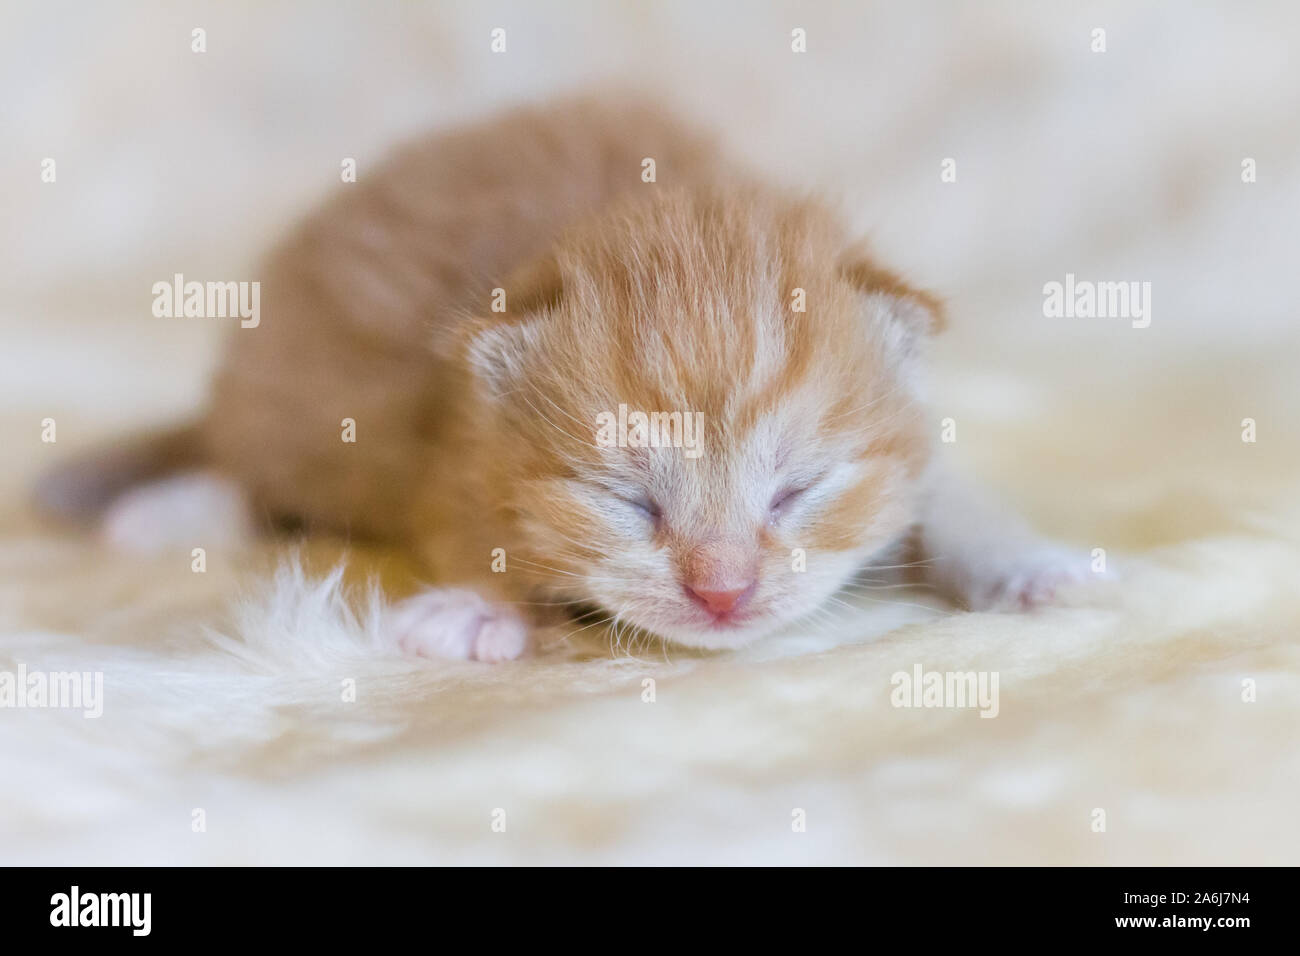 Newborn red kitten Stock Photo